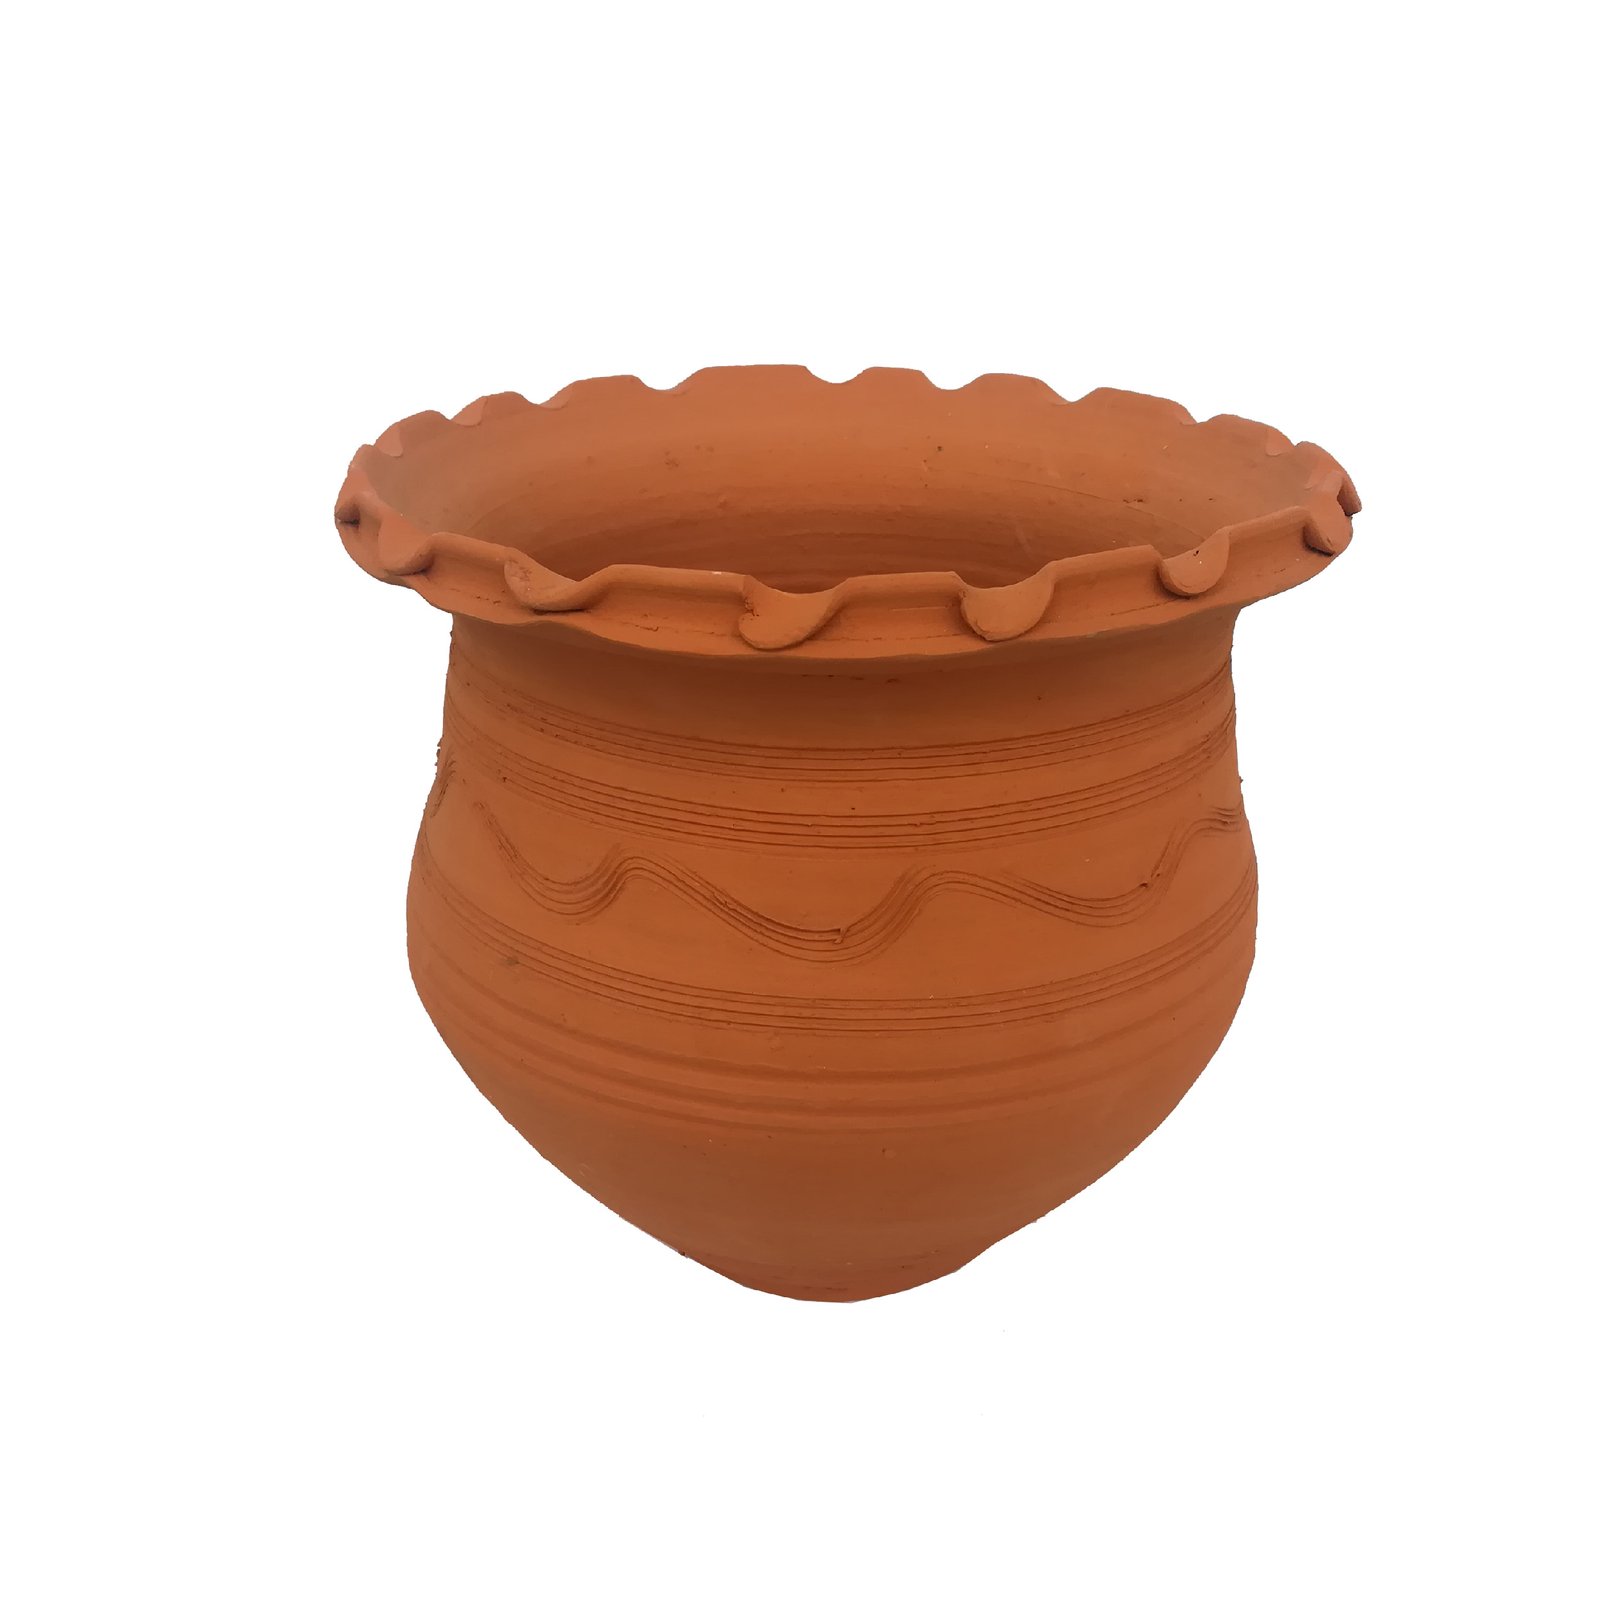 Handmade Pottery pot code sof-03,Handmade Pottery pot,handicrafts clay pot,clay